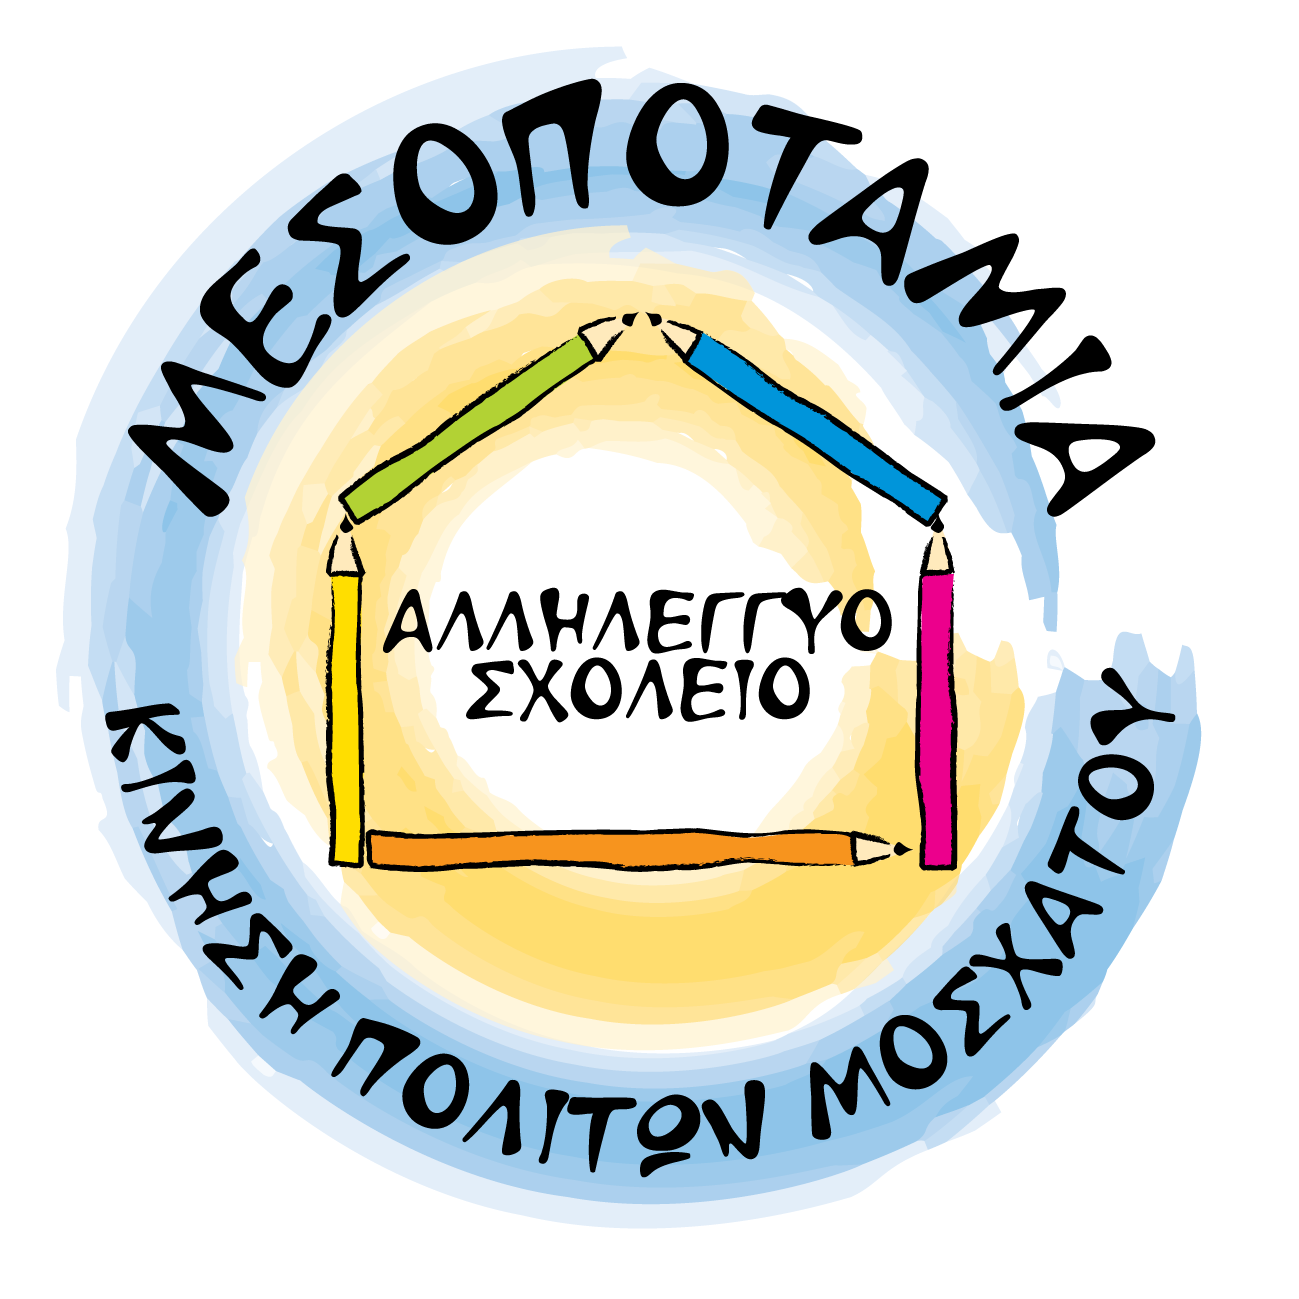 Αλληλέγγυο Σχολείο Μεσοποταμίας | Ορισμός νέου συνθηματικού logo